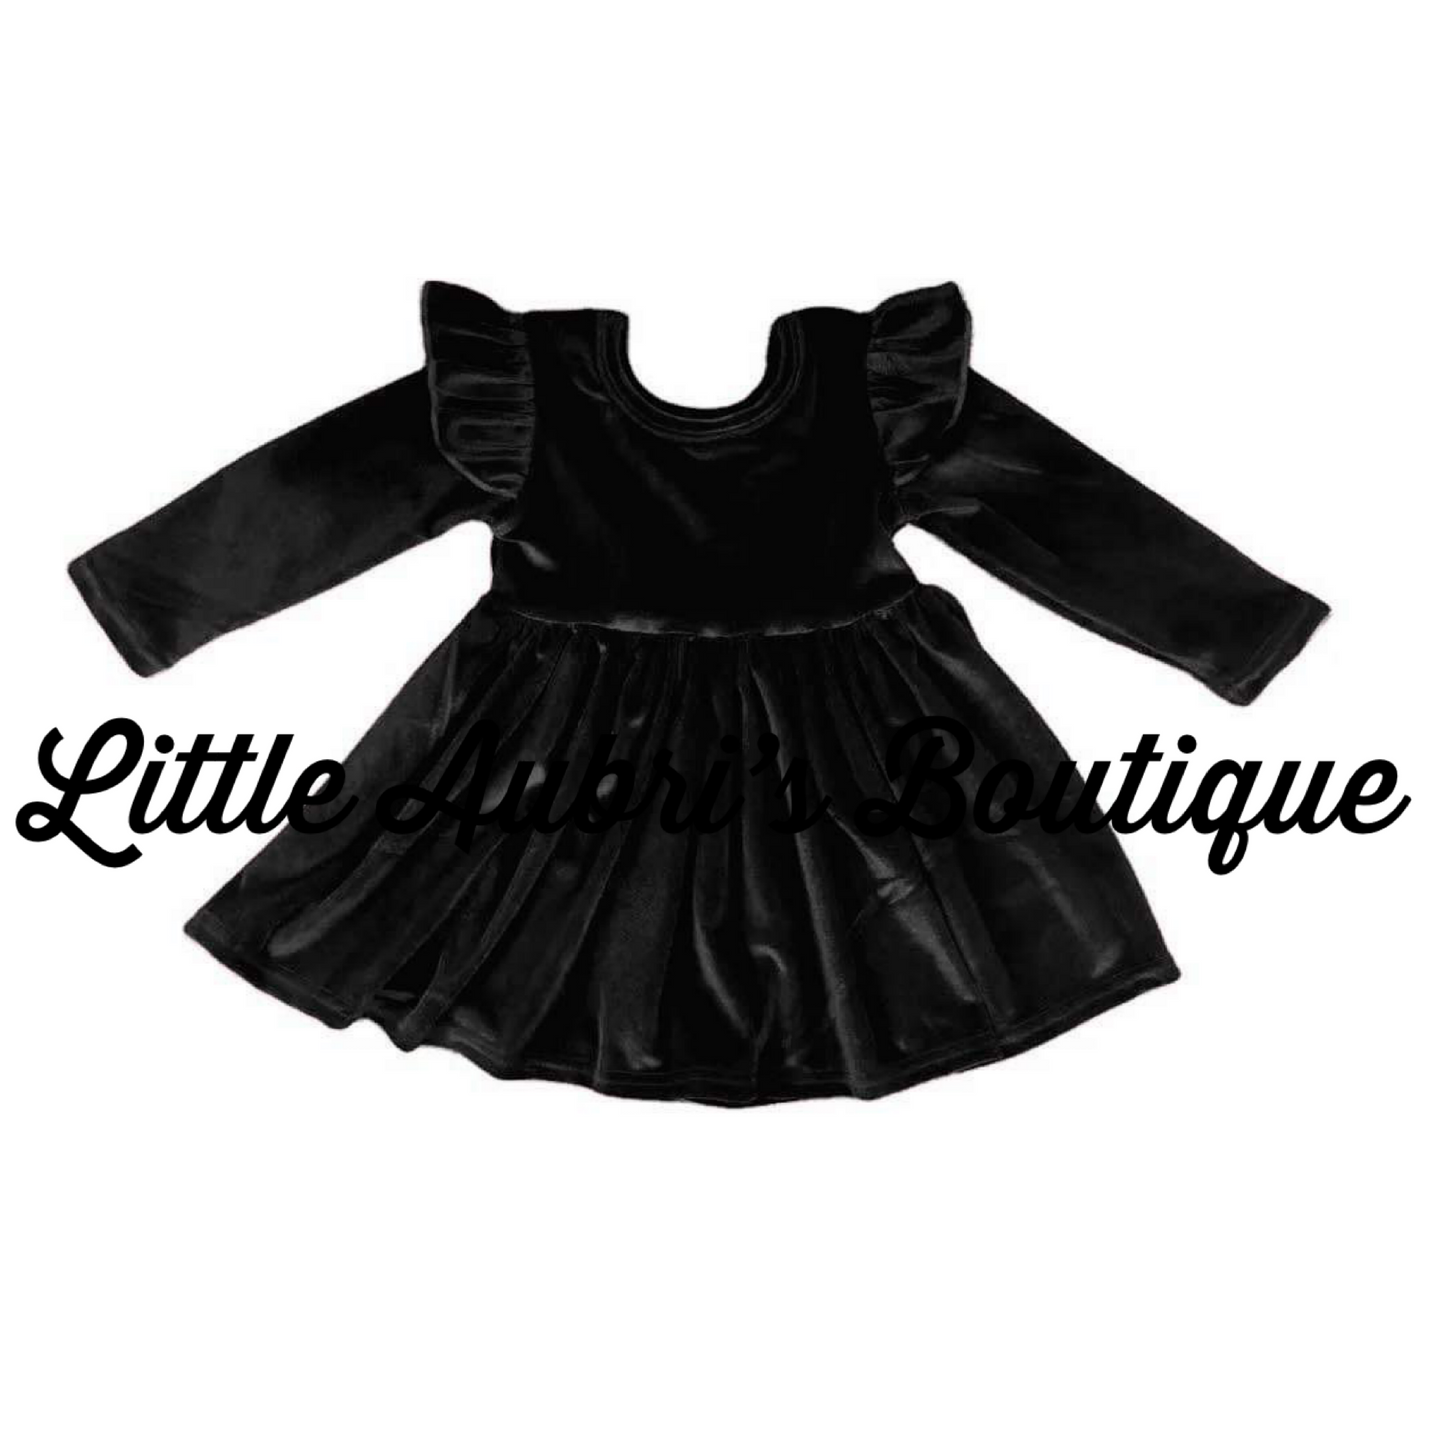 PREORDER Black Velvet Ruffle Dress CLOSES 9/22